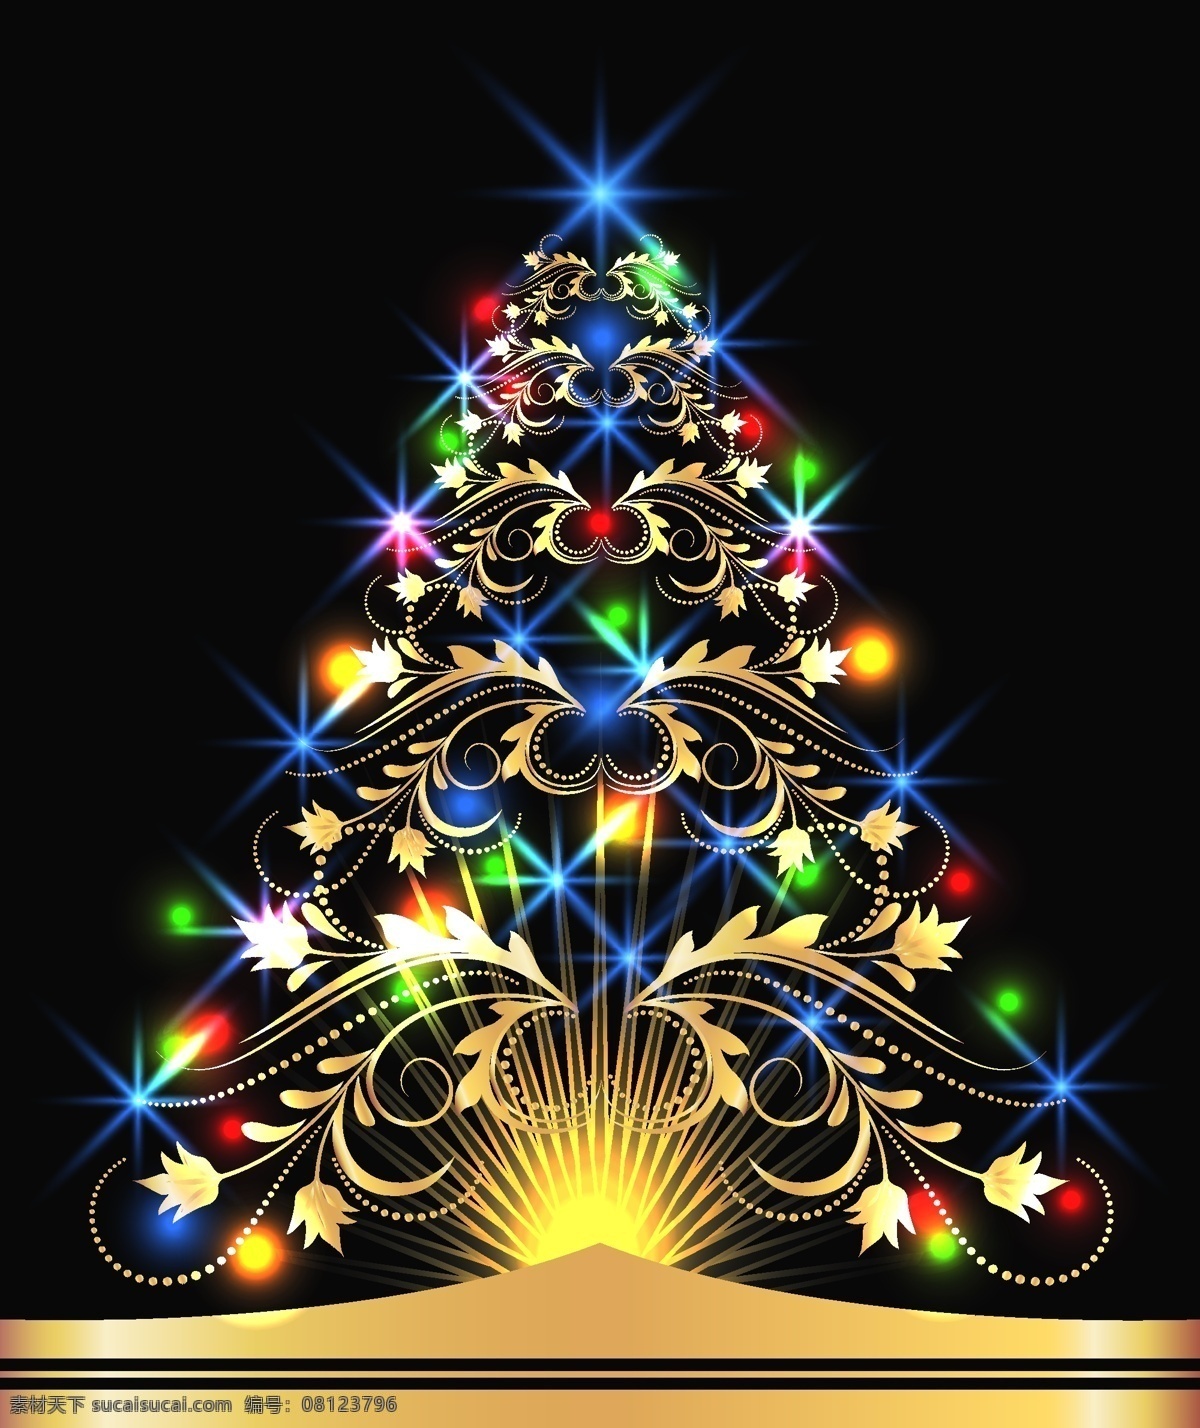 矢量 华丽 炫彩 圣诞树 彩色 璀璨 灯光 金色 圣诞 节日素材 其他节日